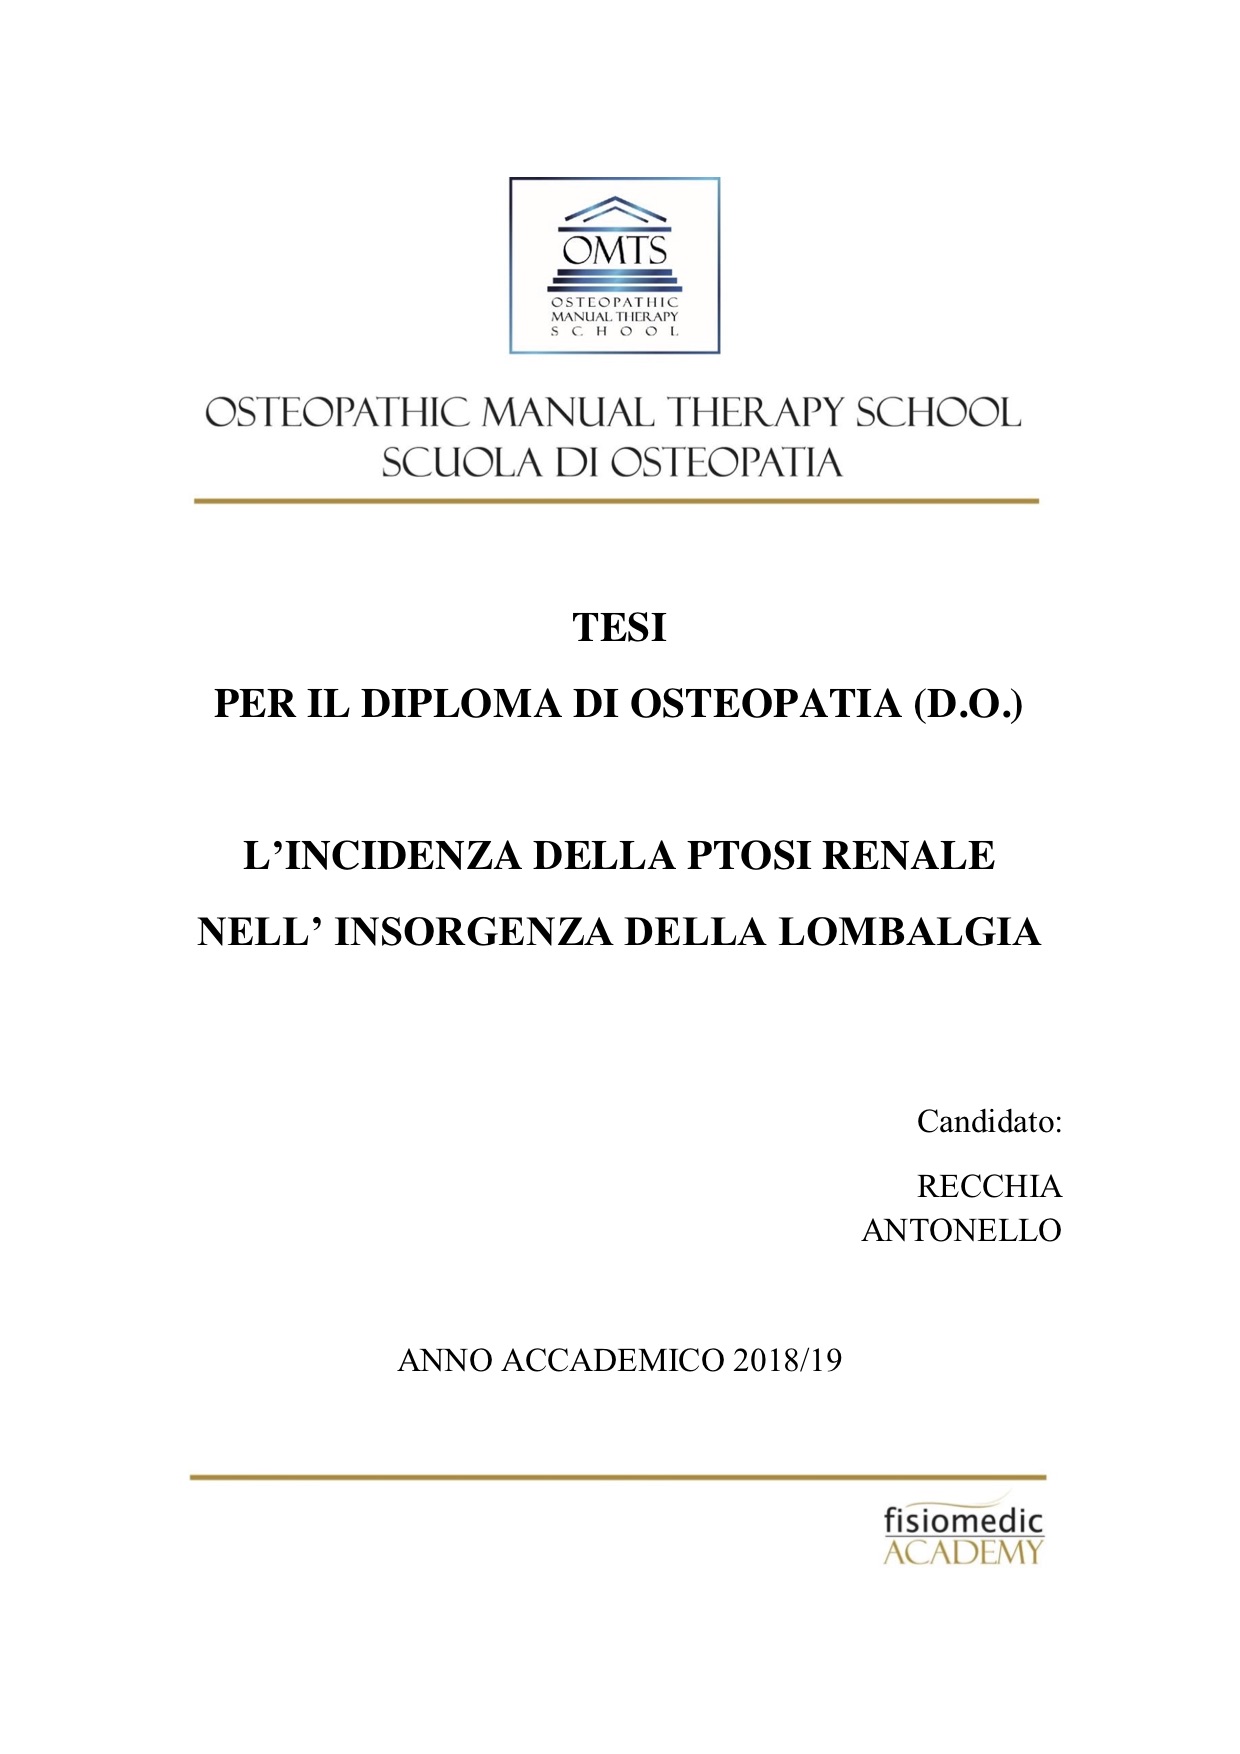 Antonello Recchia Tesi Diploma Osteopatia 2019